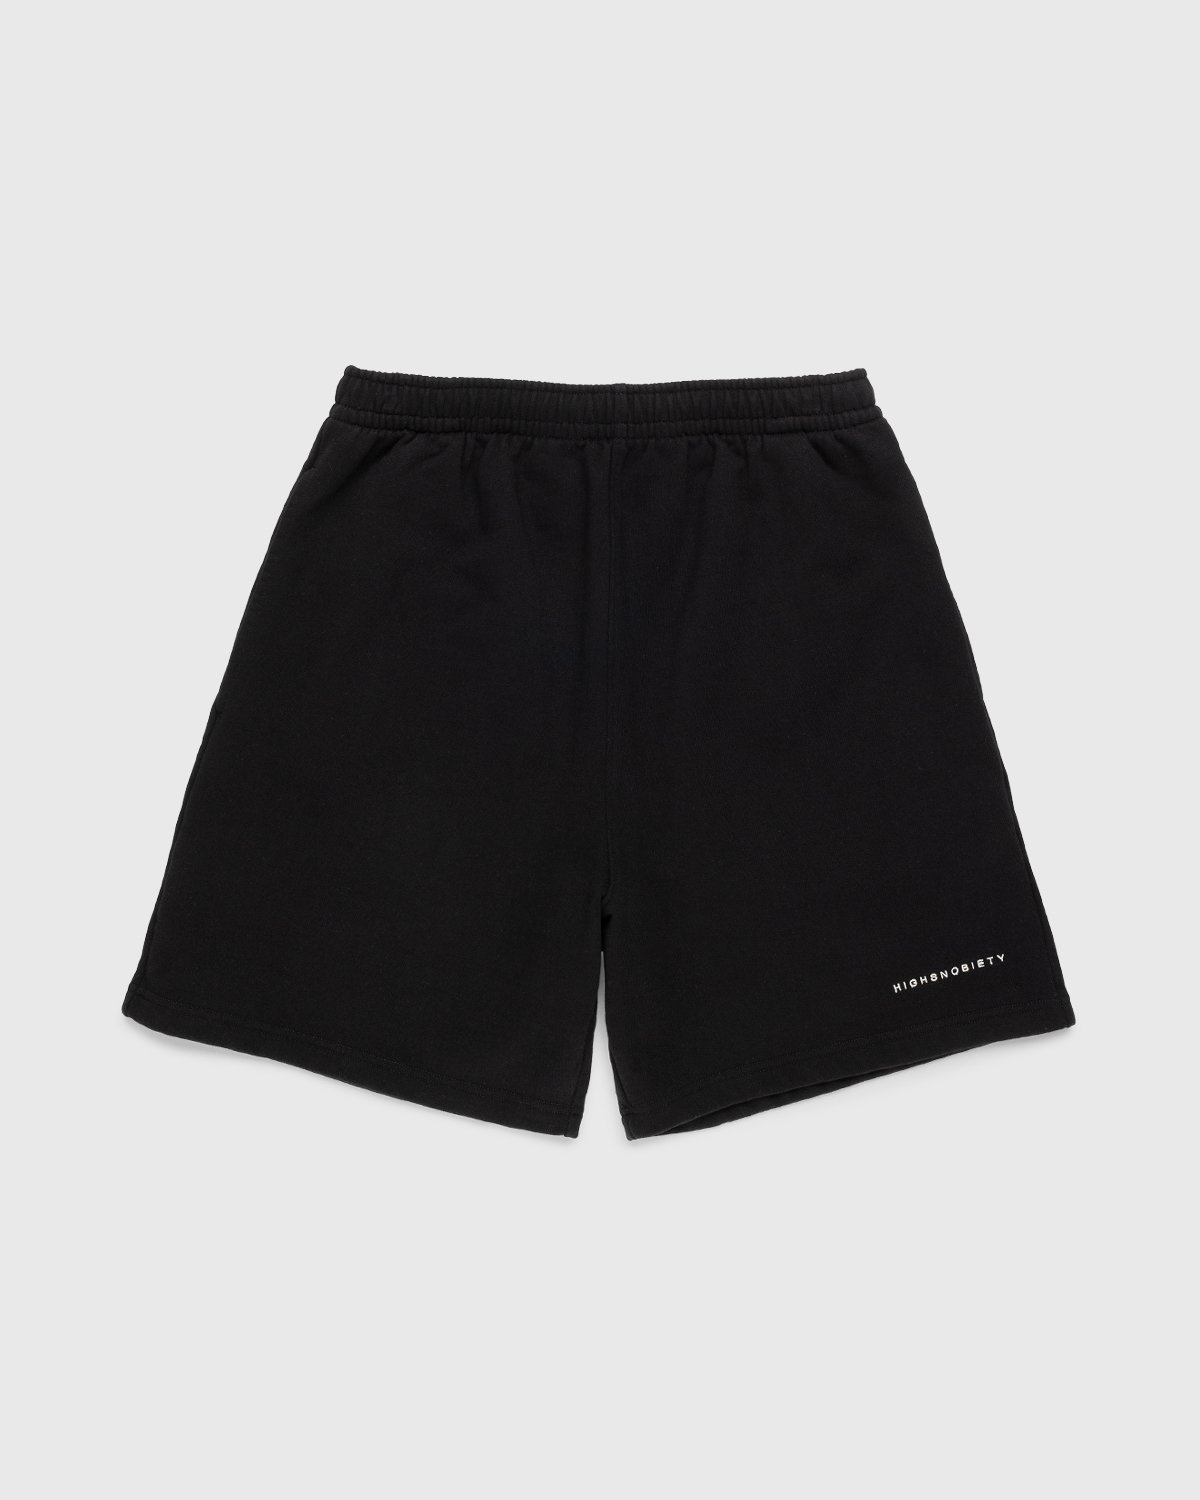 Highsnobiety – Staples Shorts Black - Sweatshorts - Black - Image 1